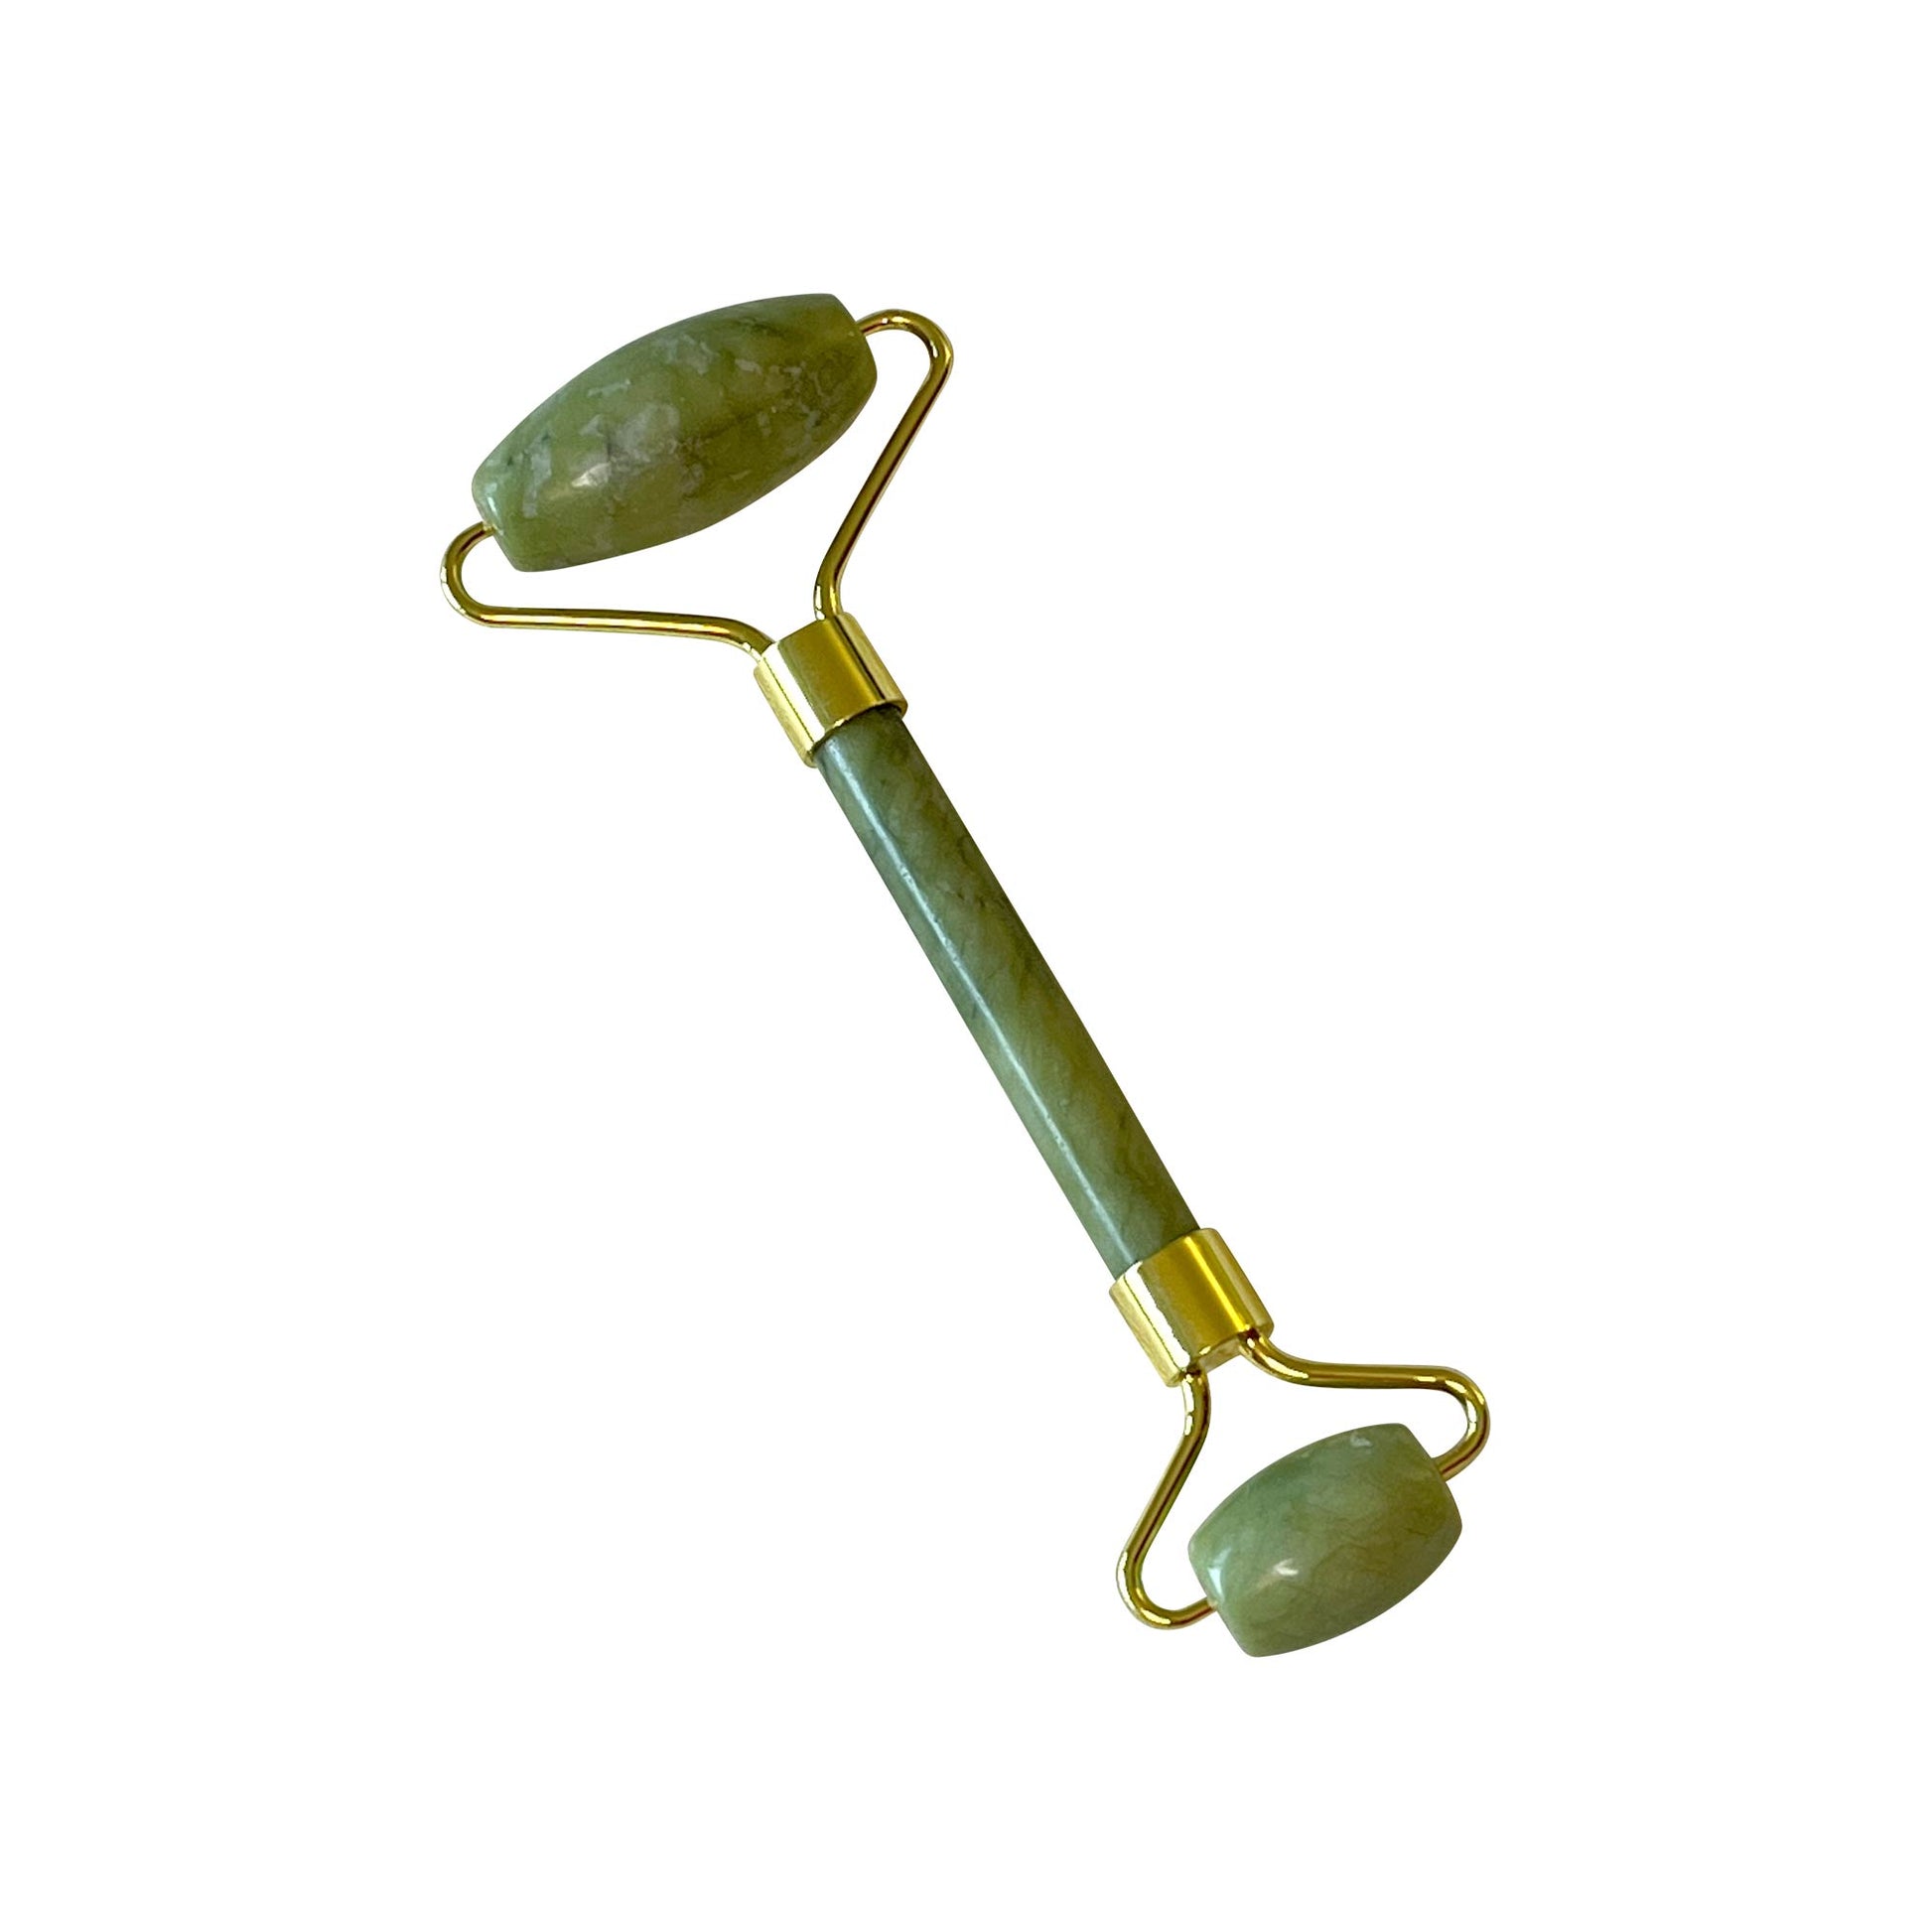 A jade roller, a green stone massager